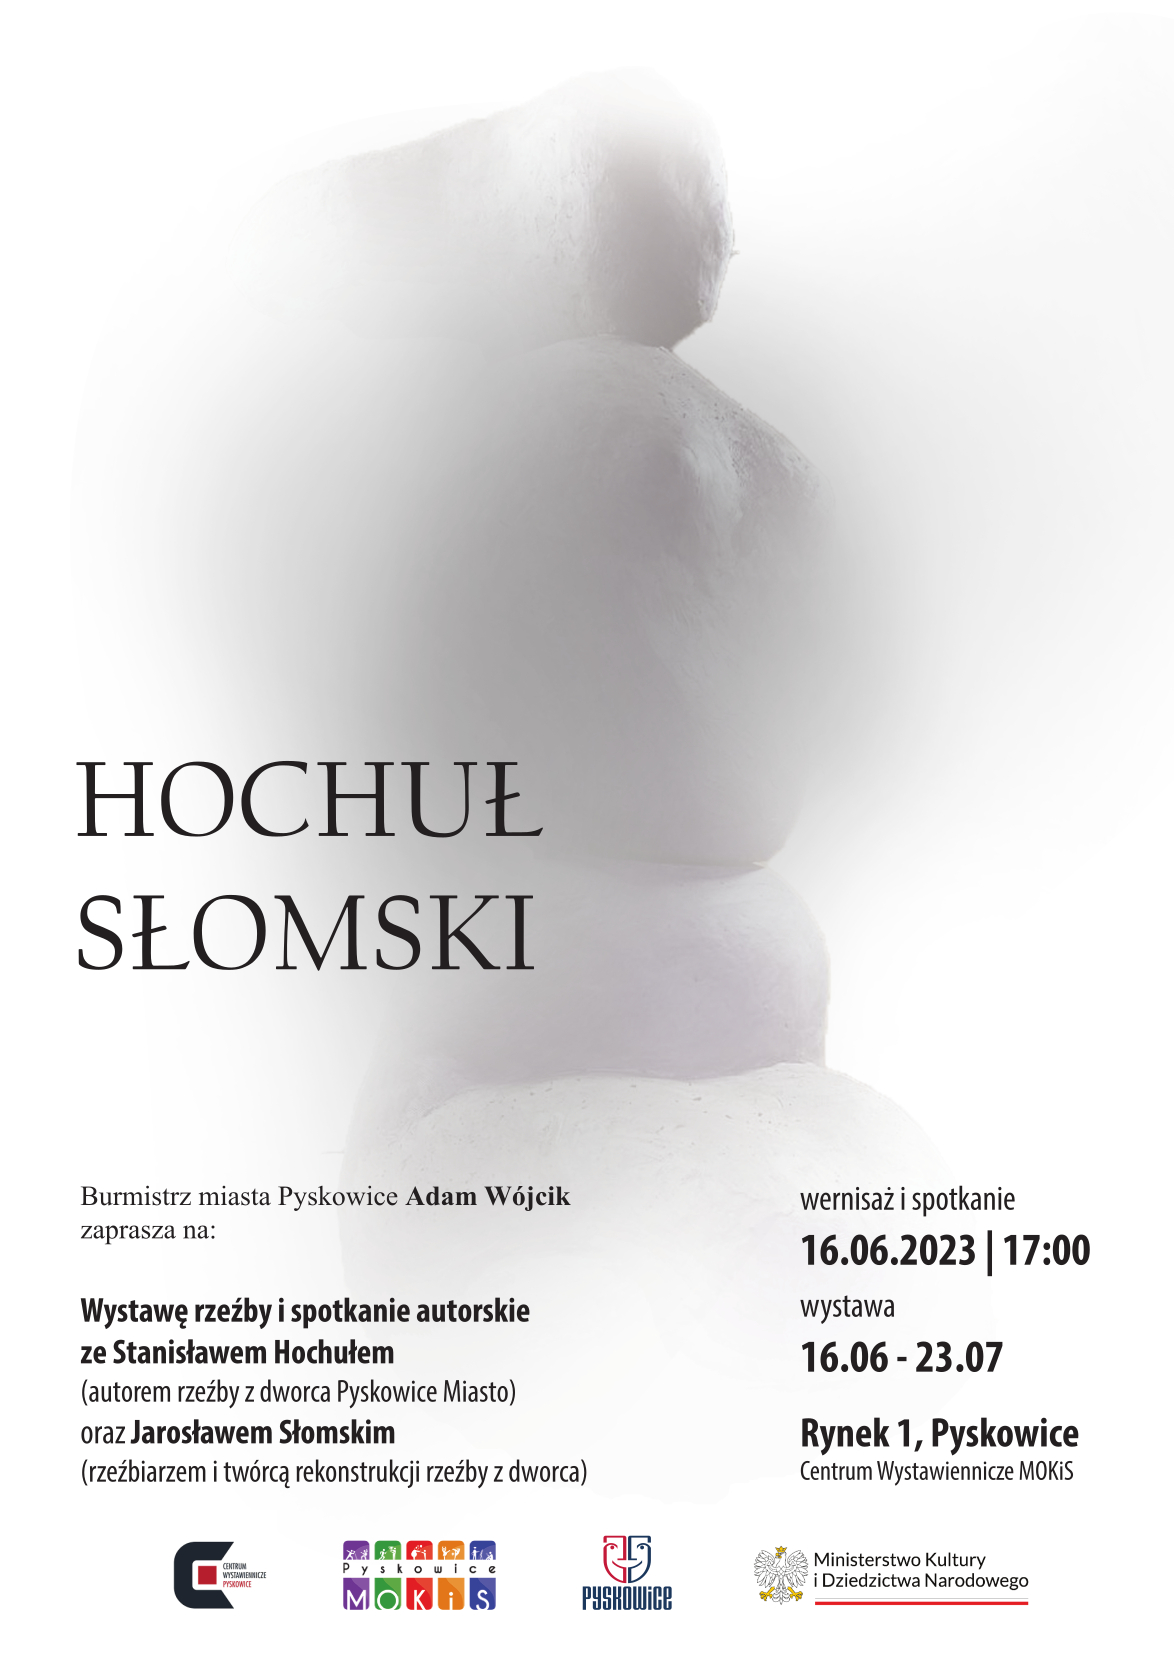 Plakat promujący wystawę w Centrum Wystawienniczym MOKiS w Pyskowicach